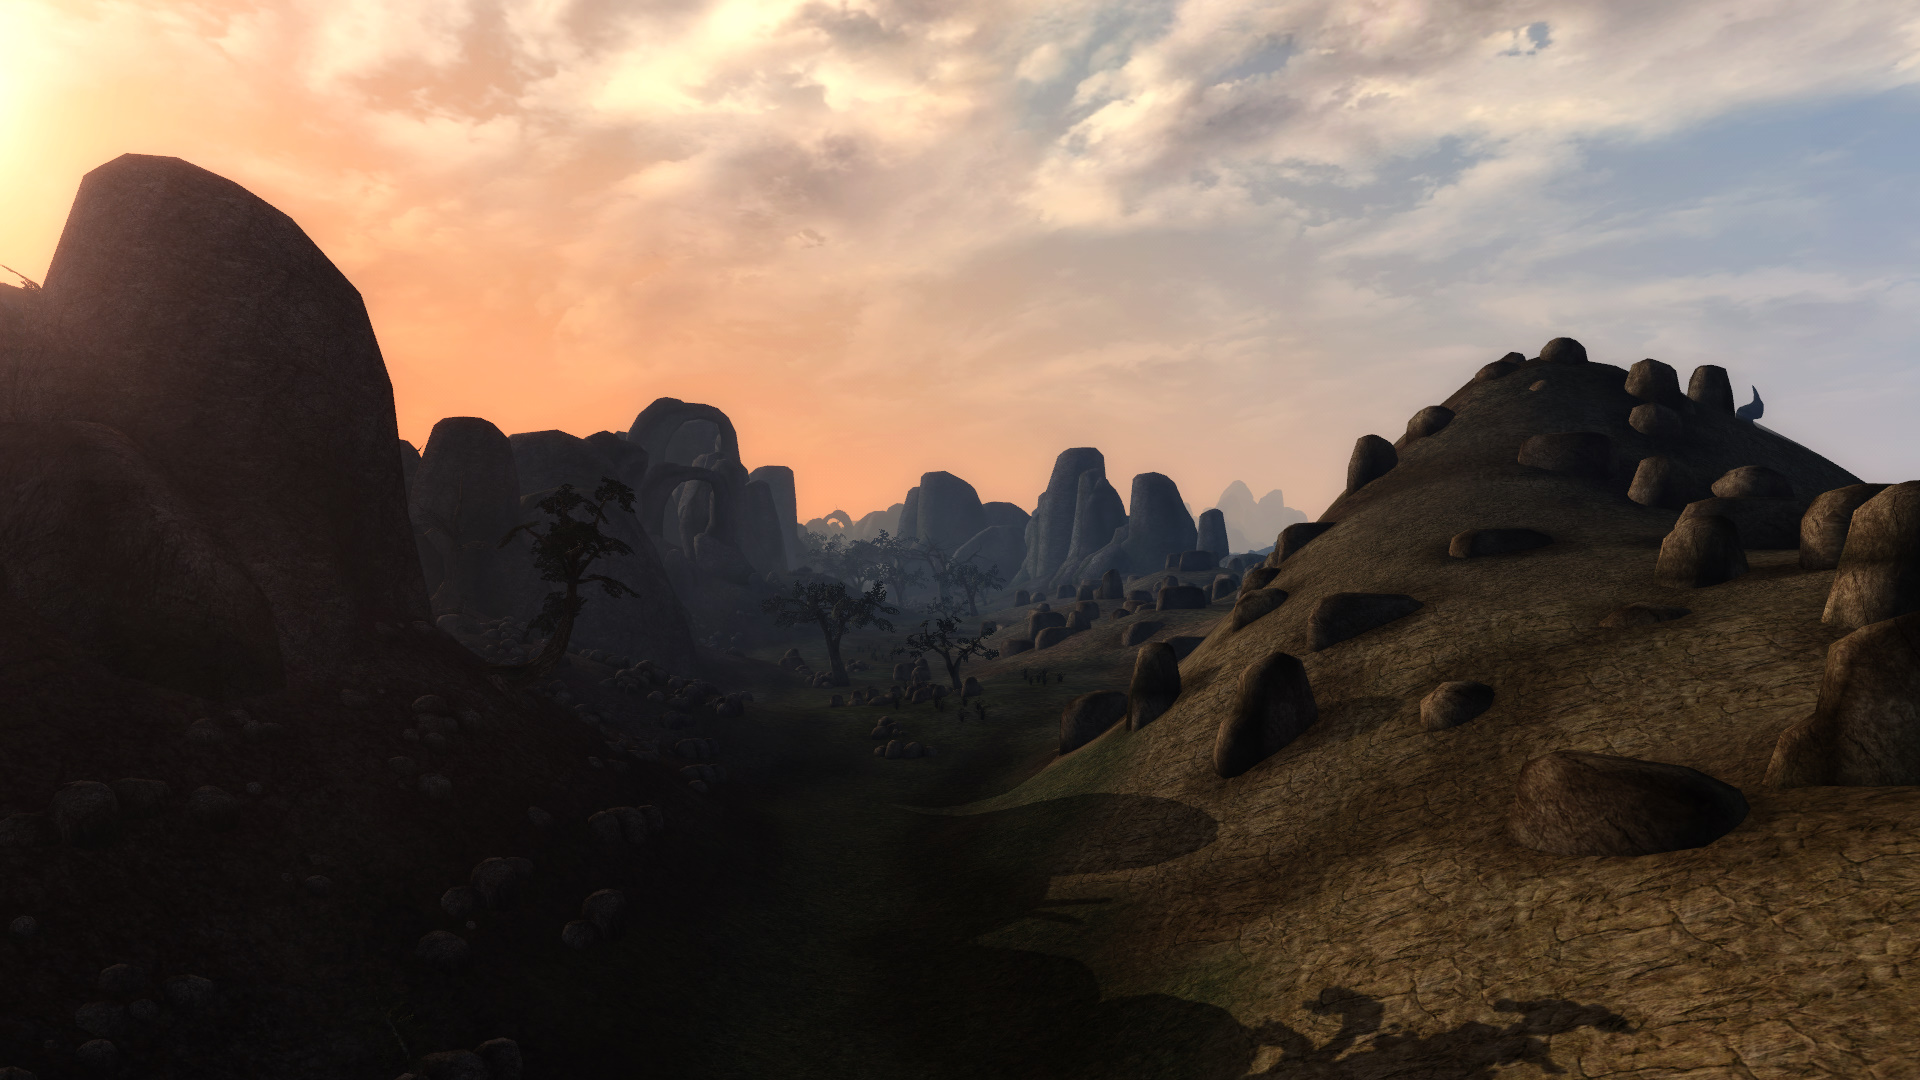 Morrowind 2014-01-20 21-53-06-437.jpg